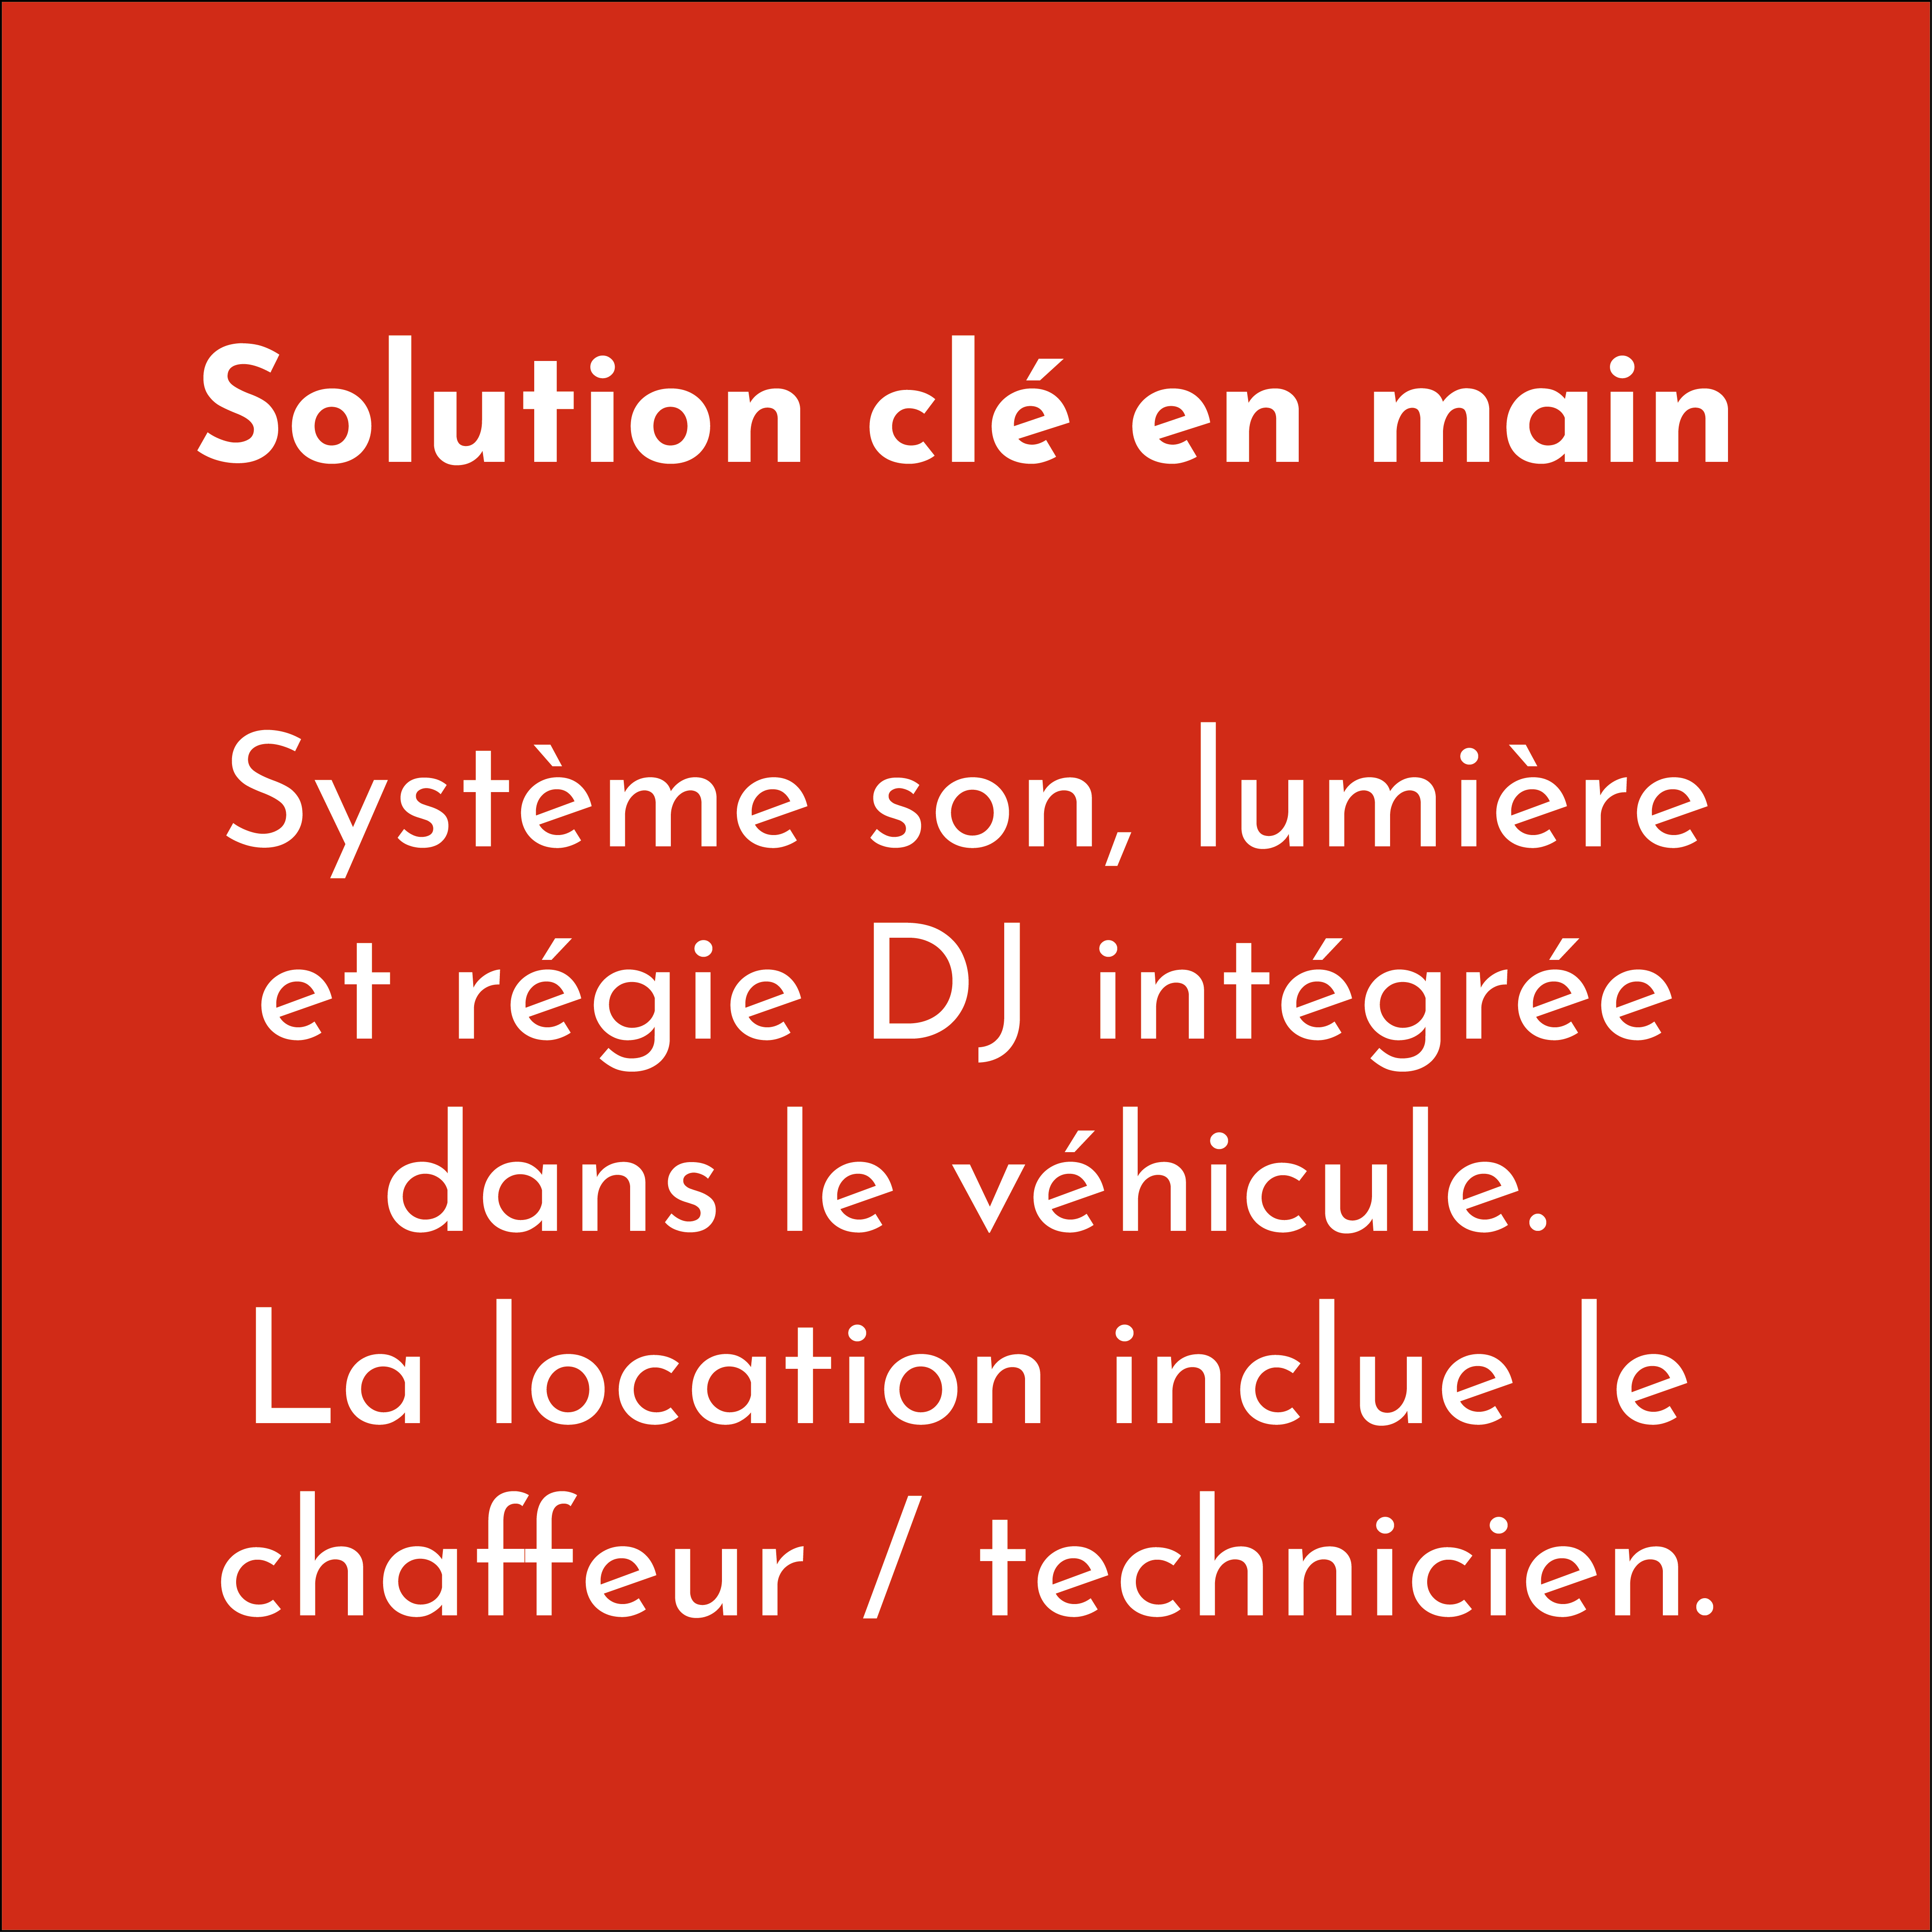 DJ Truck solution clé en main, système son, lumière et régie DJ intégré dans le véhicule. La Location inclut le chauffeur, technicien.